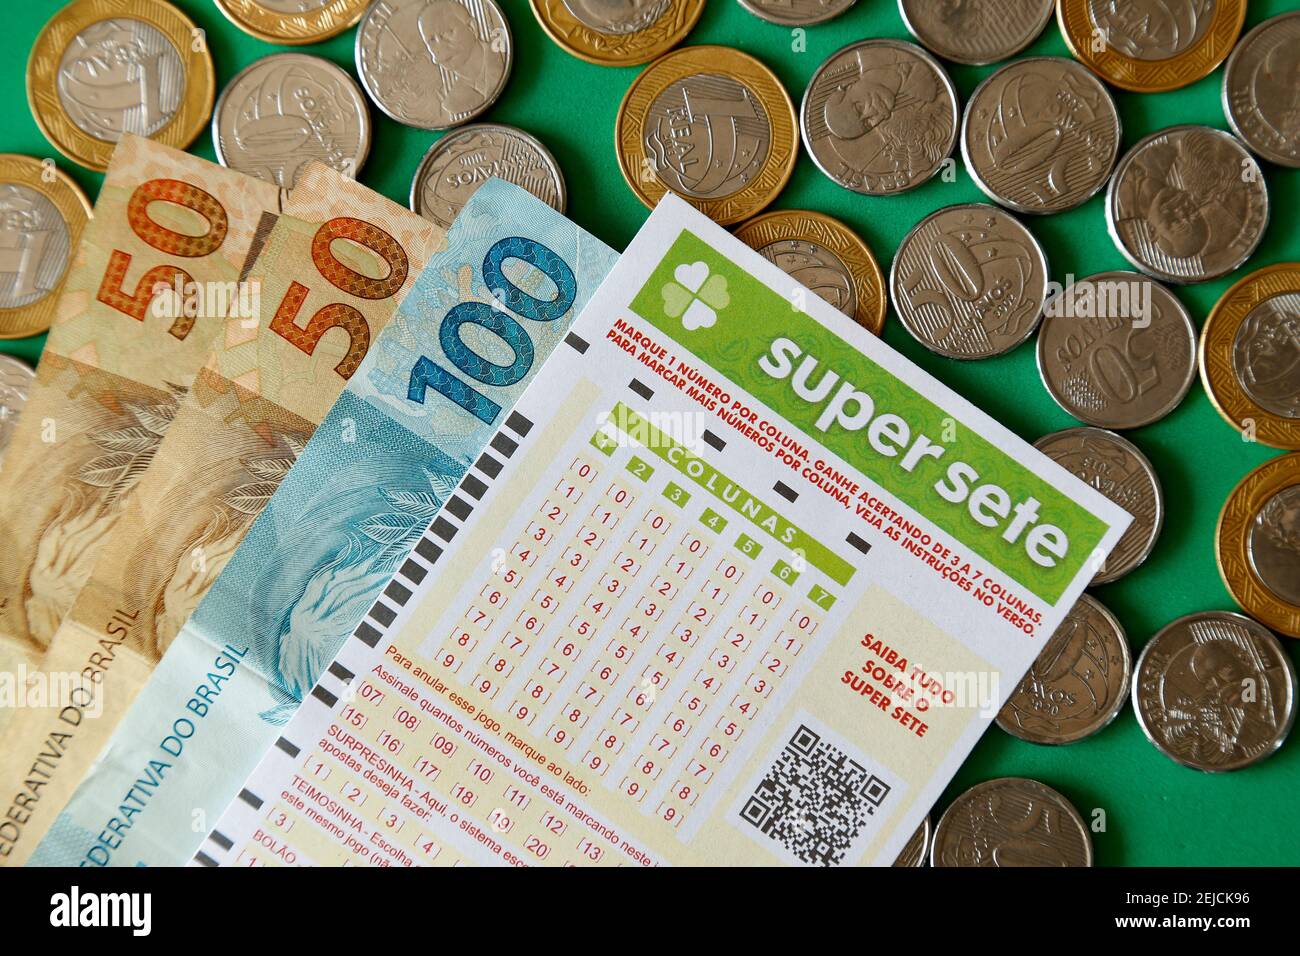 Minas Gerais, Brésil - 22 février 2021 : billets en espèces, pièces et billets de loterie Caixa Super Sete Banque D'Images